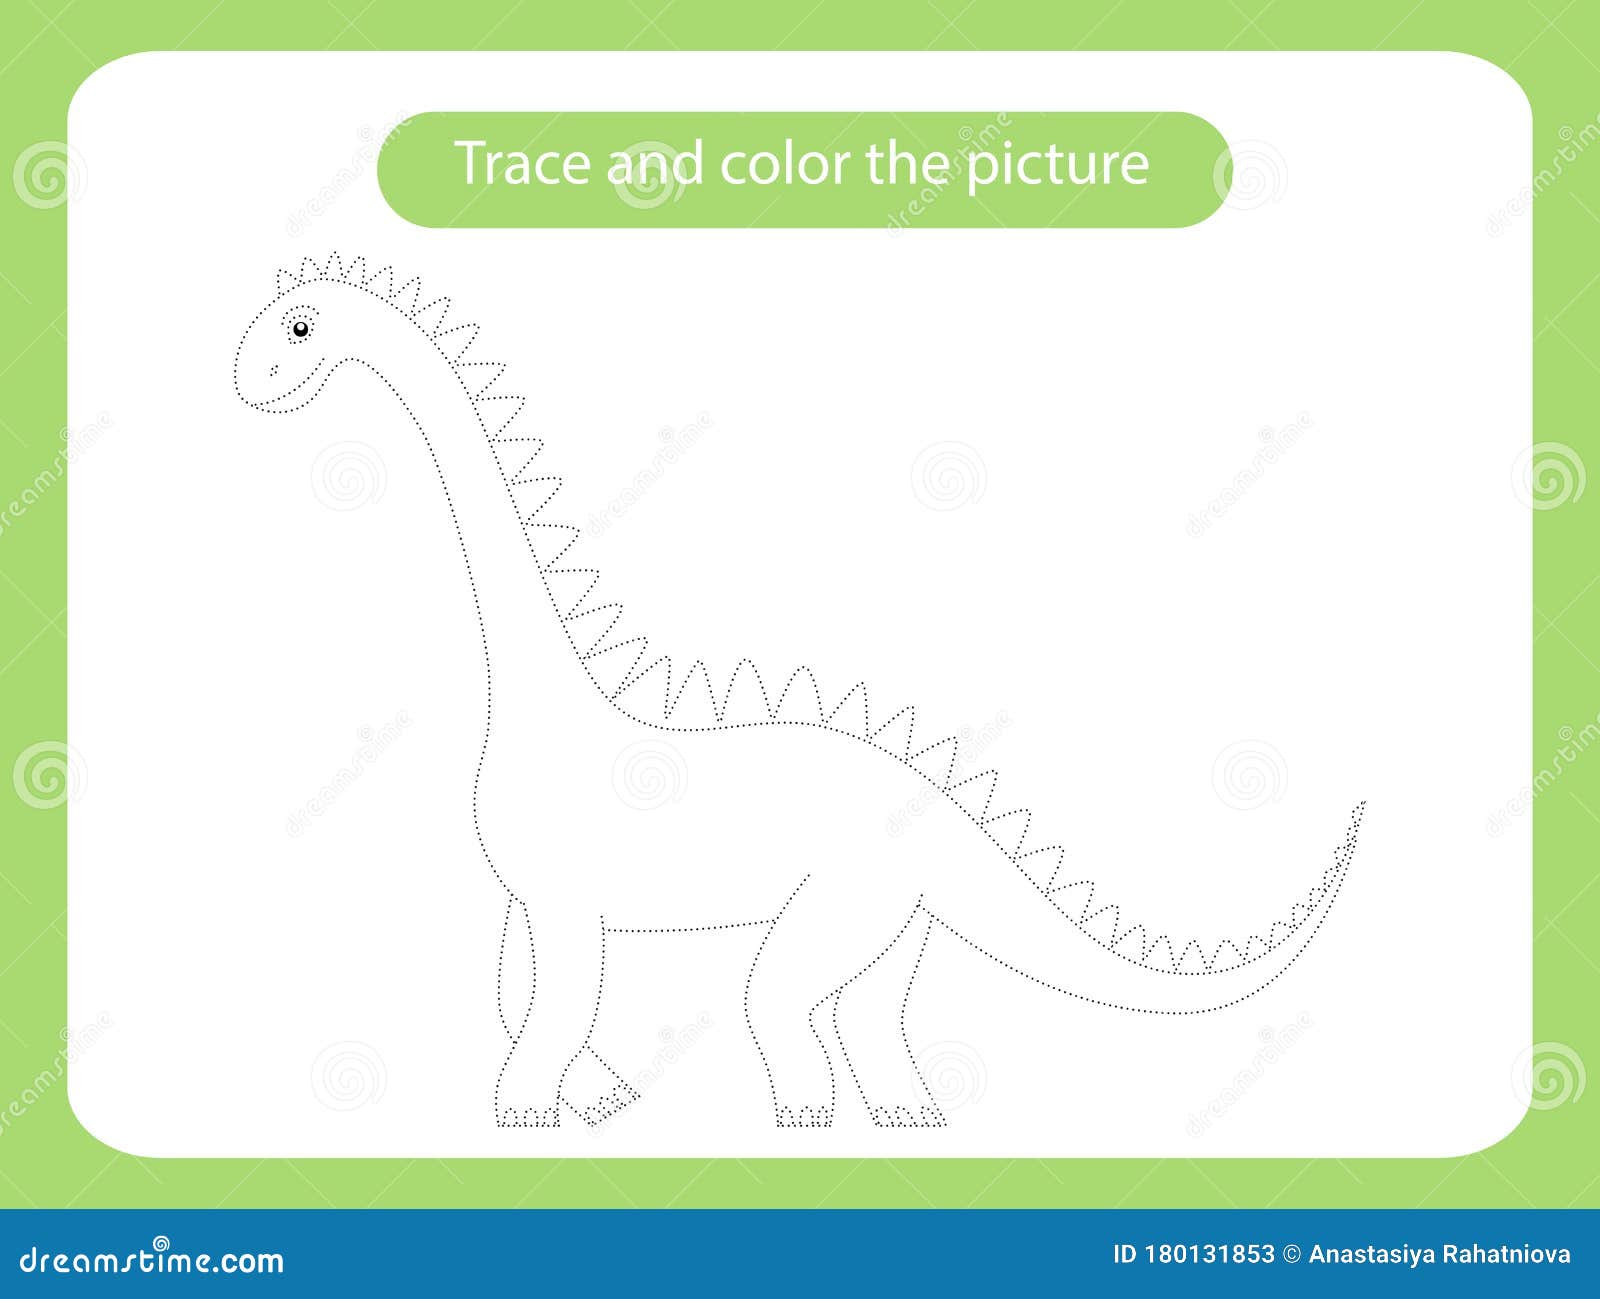 Desenho De Diplodocus Página Para Colorir Crianças Dino Diplodocid